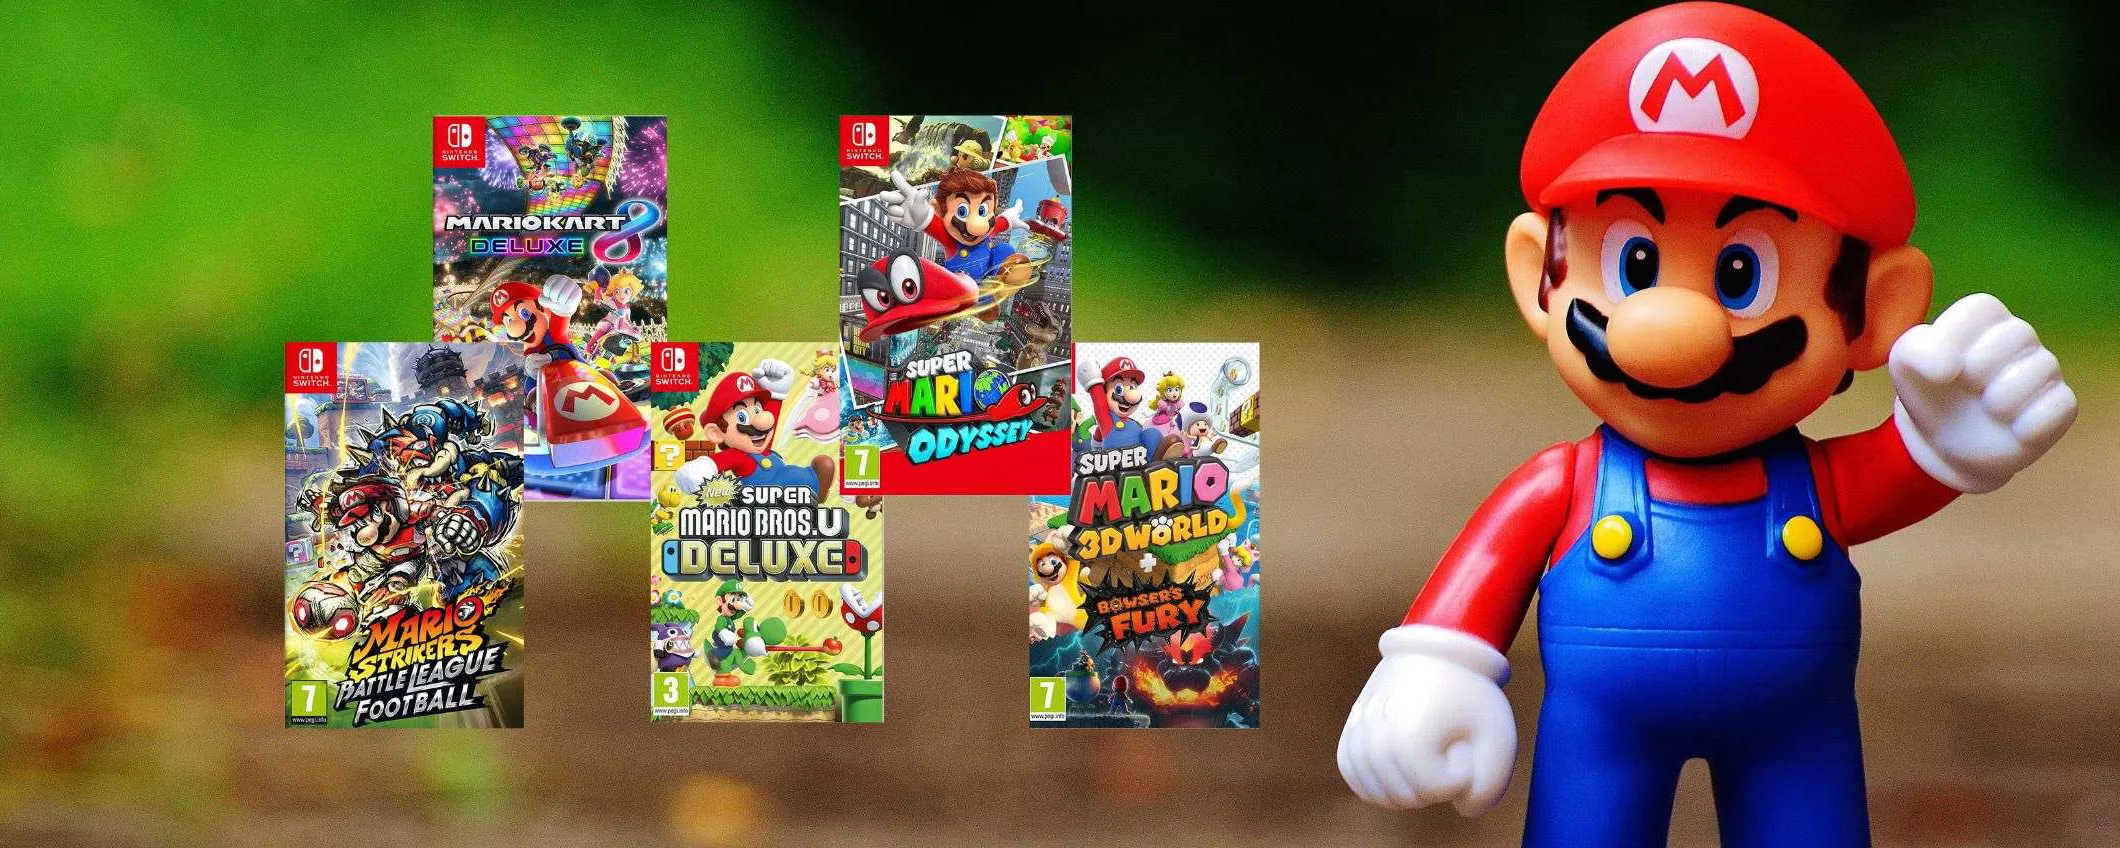 5 giochi di Super Mario per Switch da scoprire dopo aver visto il film